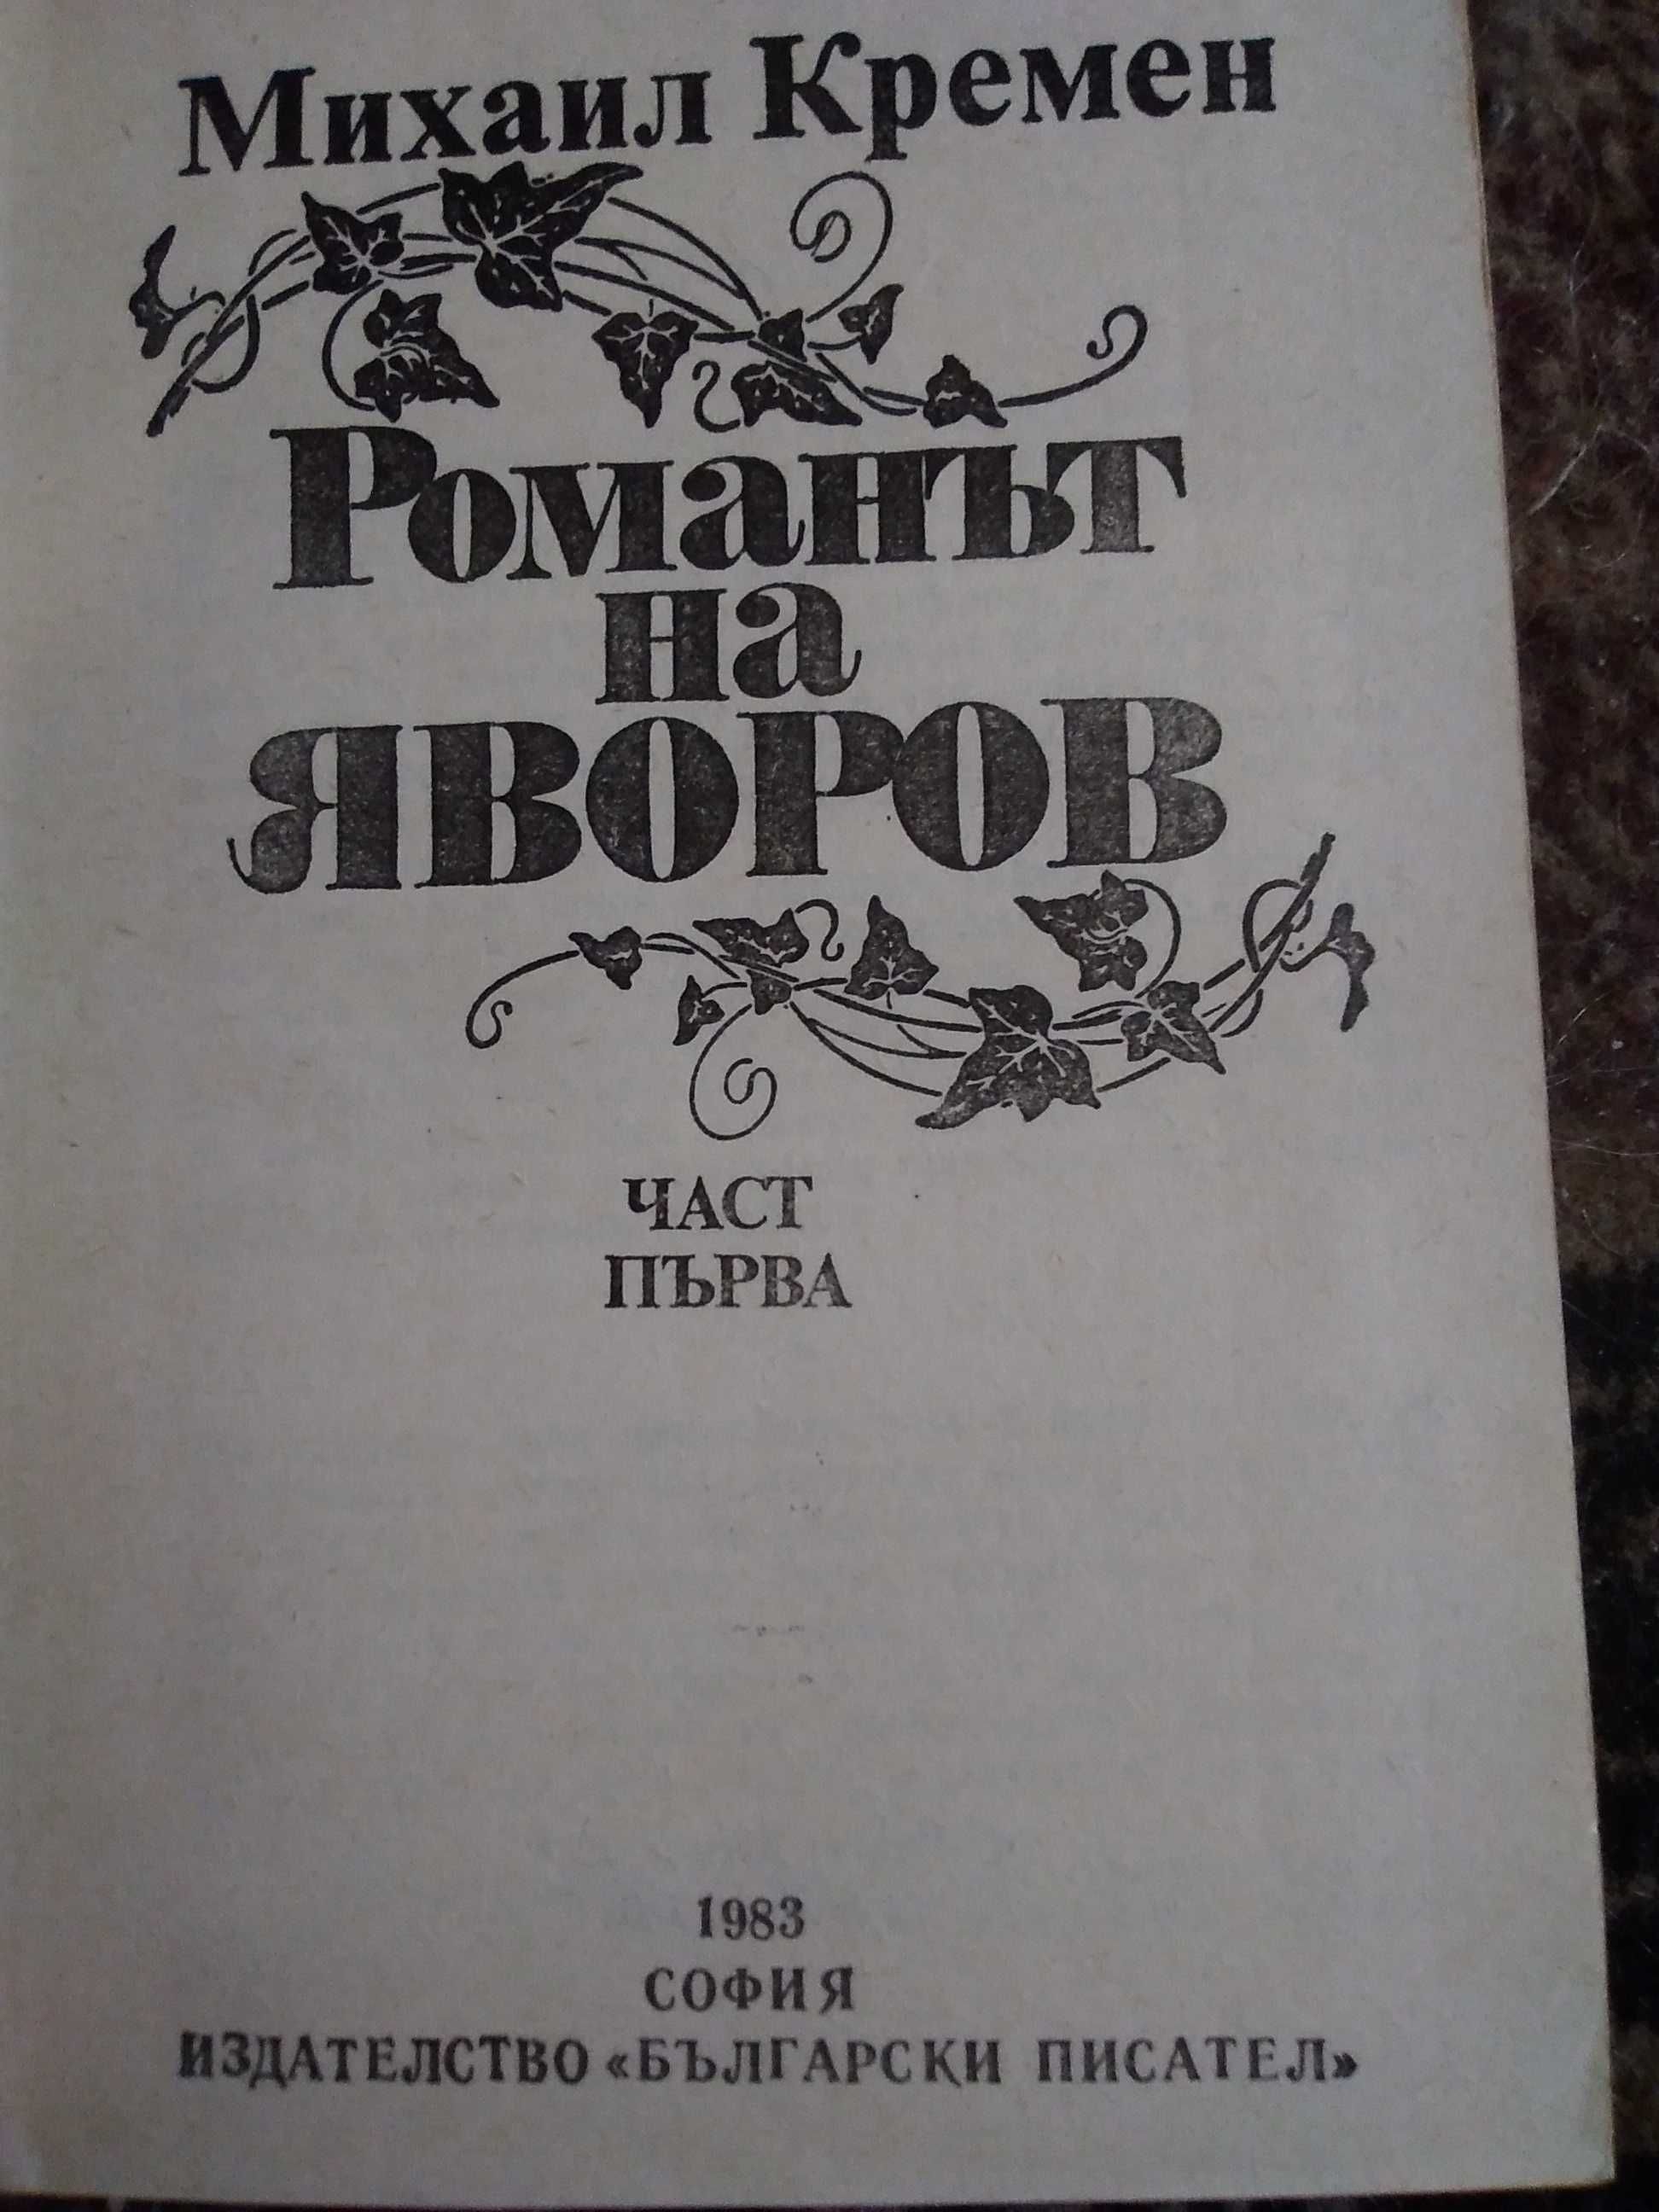 "Романът на Яворов"-от М.Кремен част 1-Промоция до 1.10